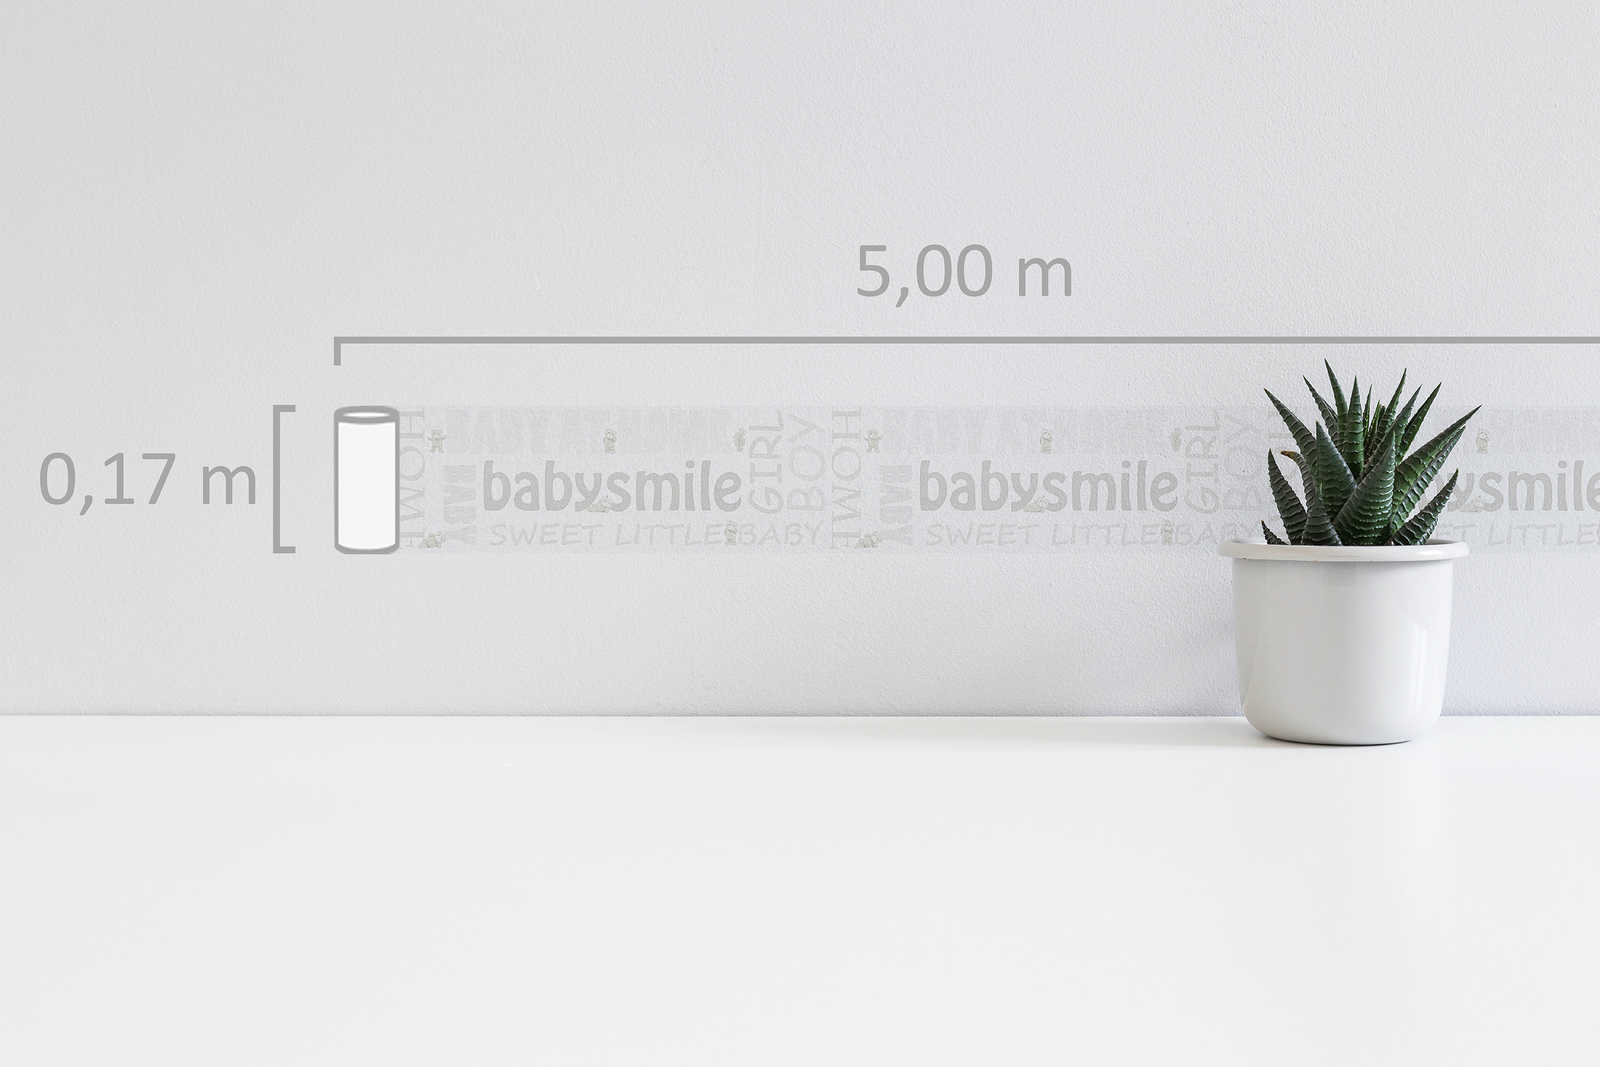             Kinderzimmerborte Baby Smile mit Metallic Effekt – Weiß
        